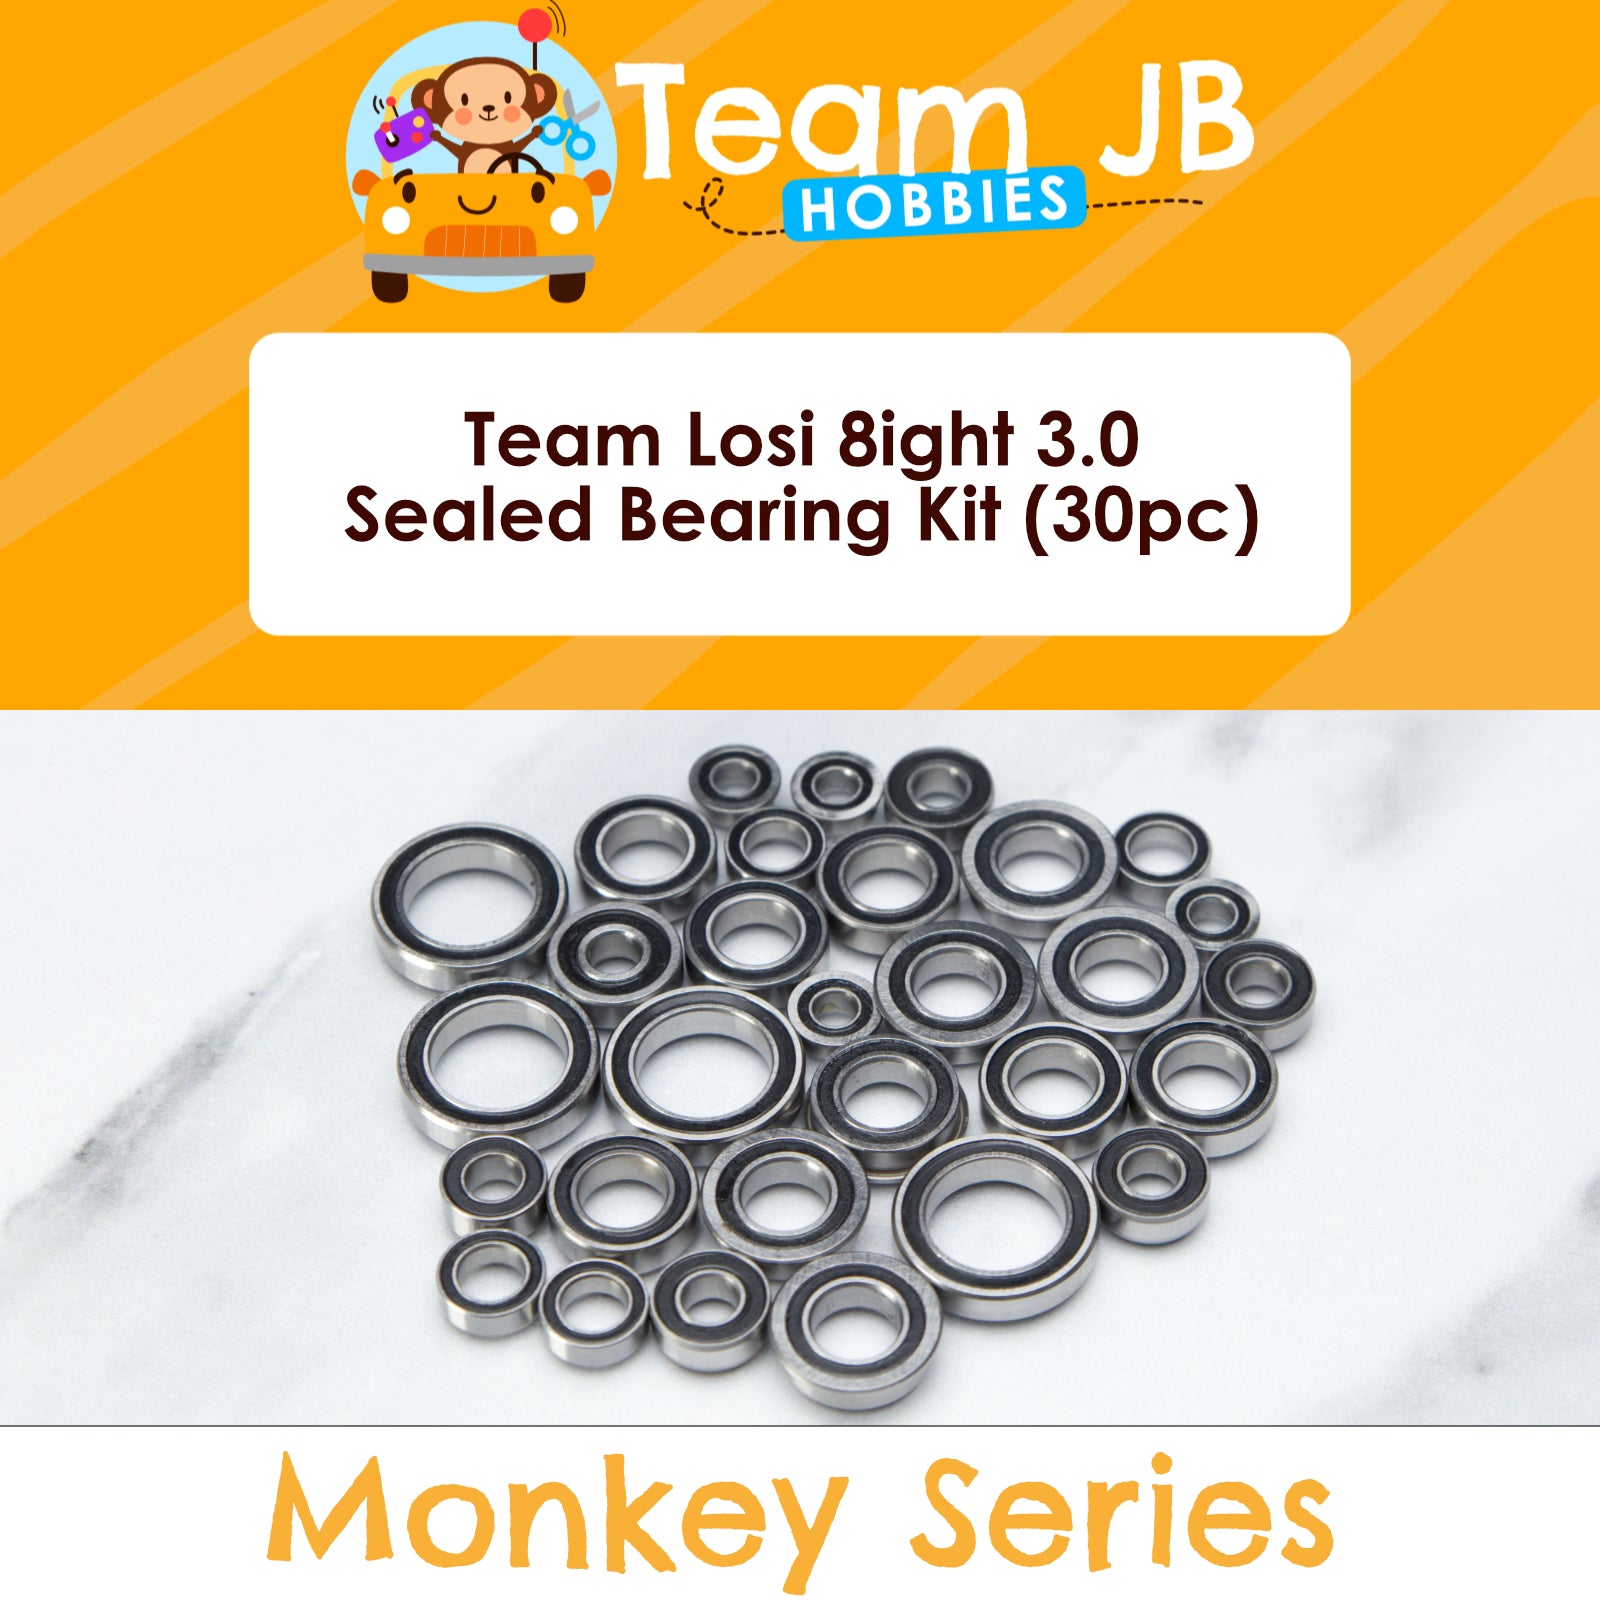 Team Losi 8ight 3.0 - Sealed Bearing Kit